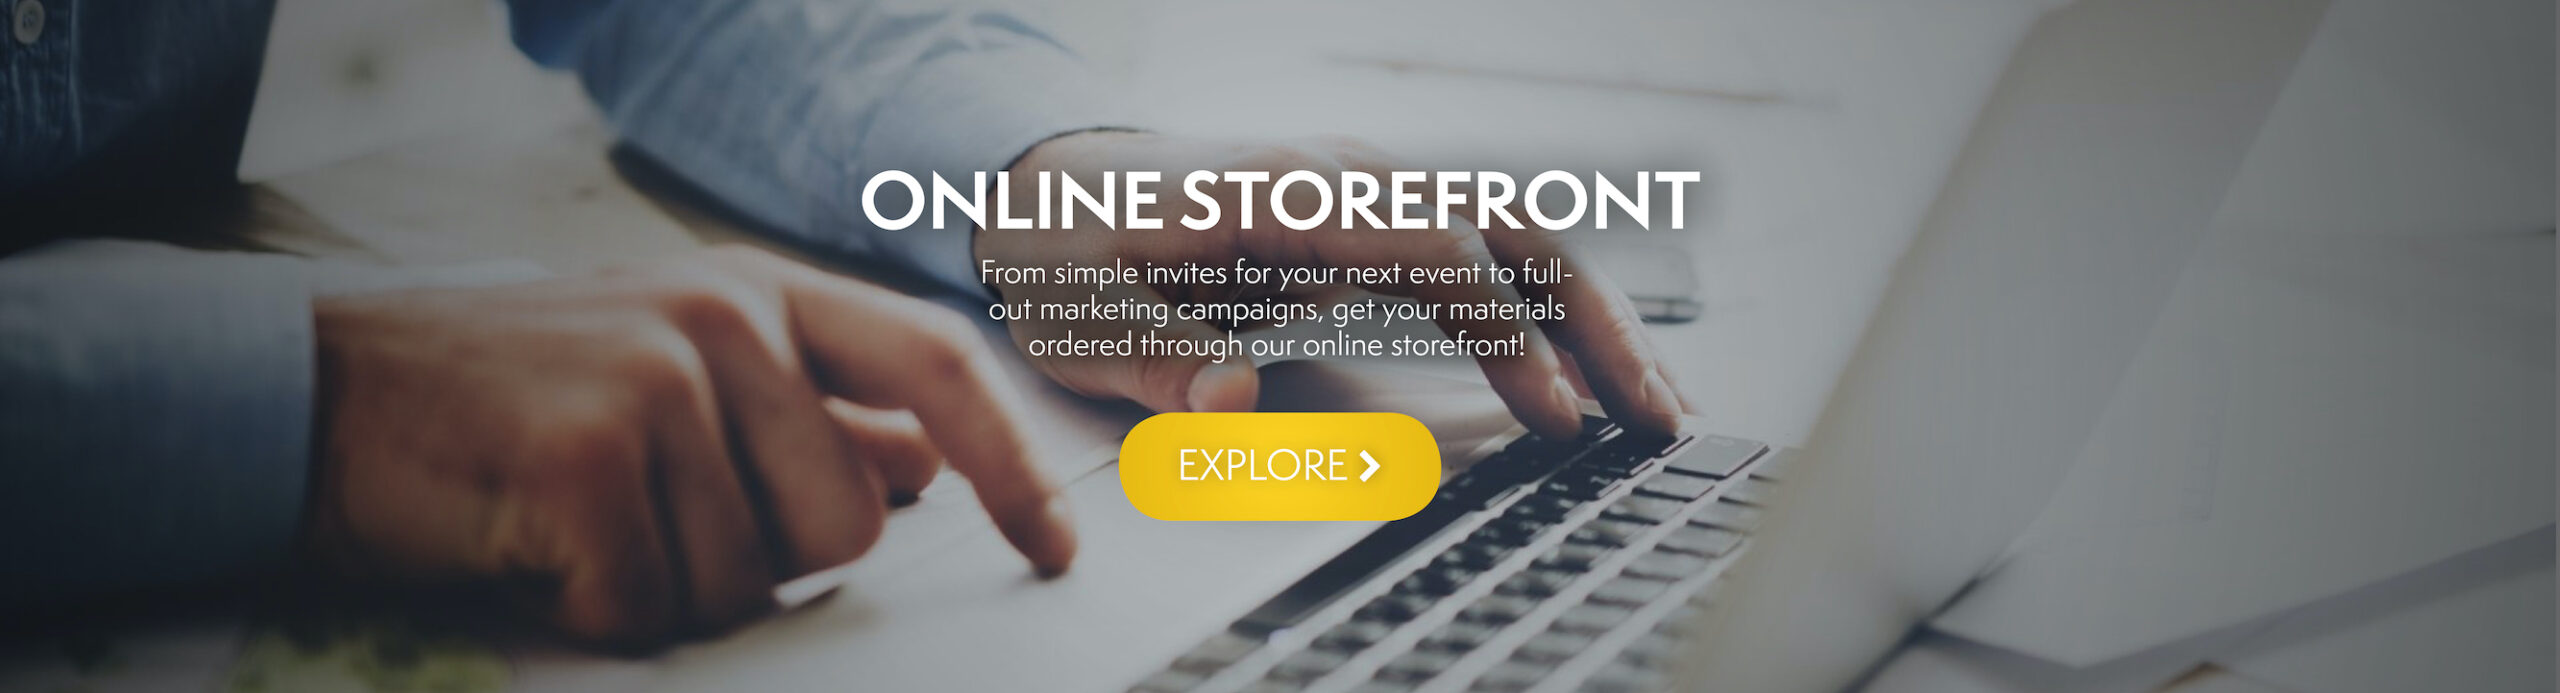 Online Storefront slide